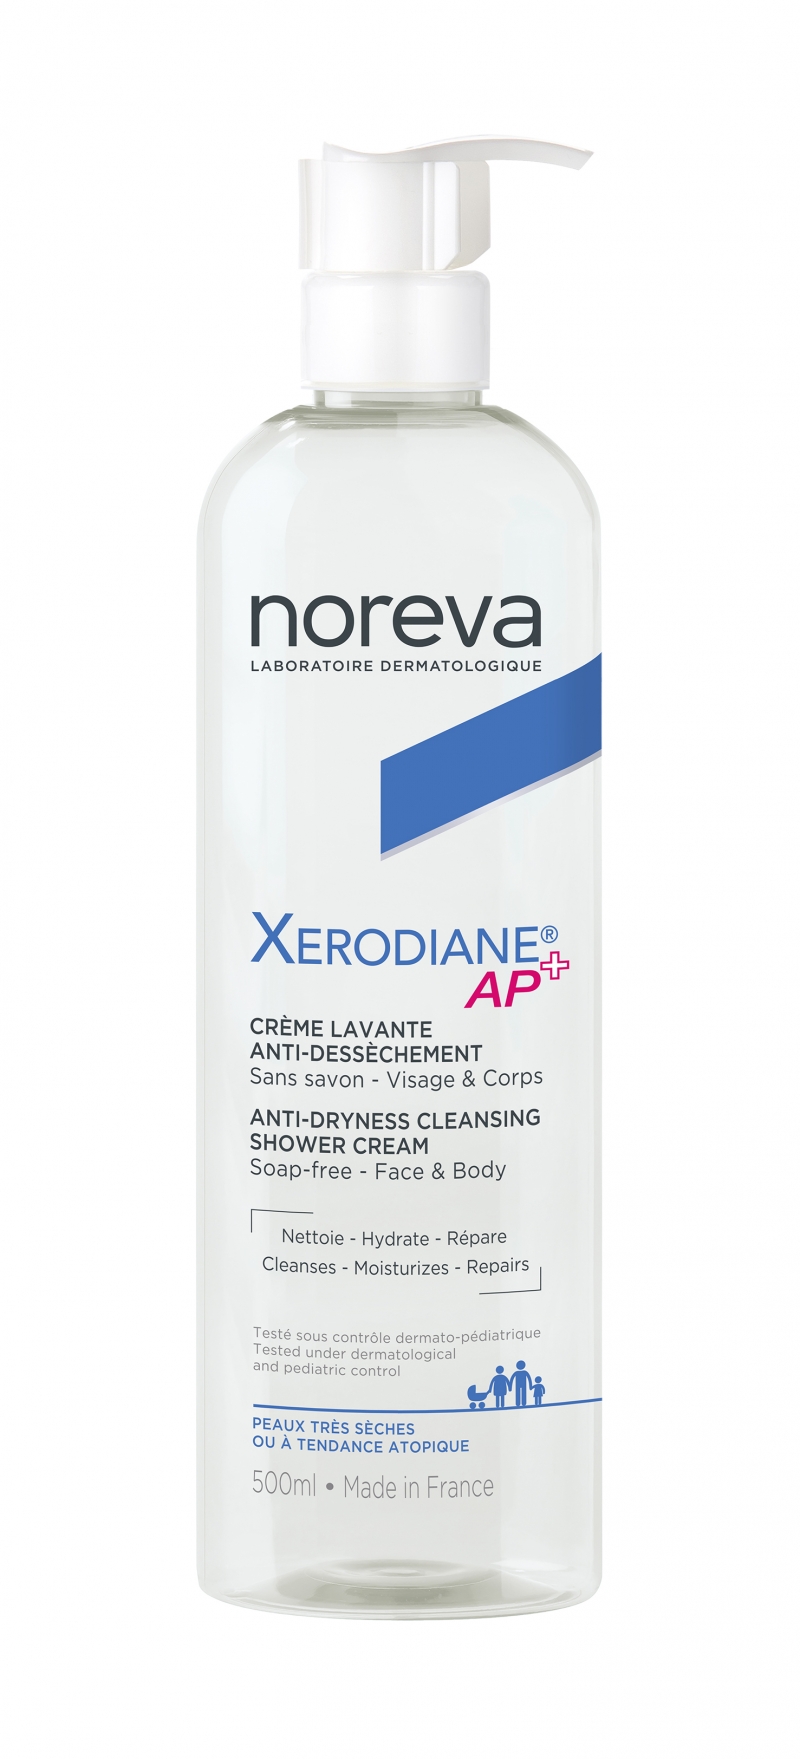 Noreva Смягчающий очищающий крем для душа, 500 мл (Noreva, Xerodiane AP+)